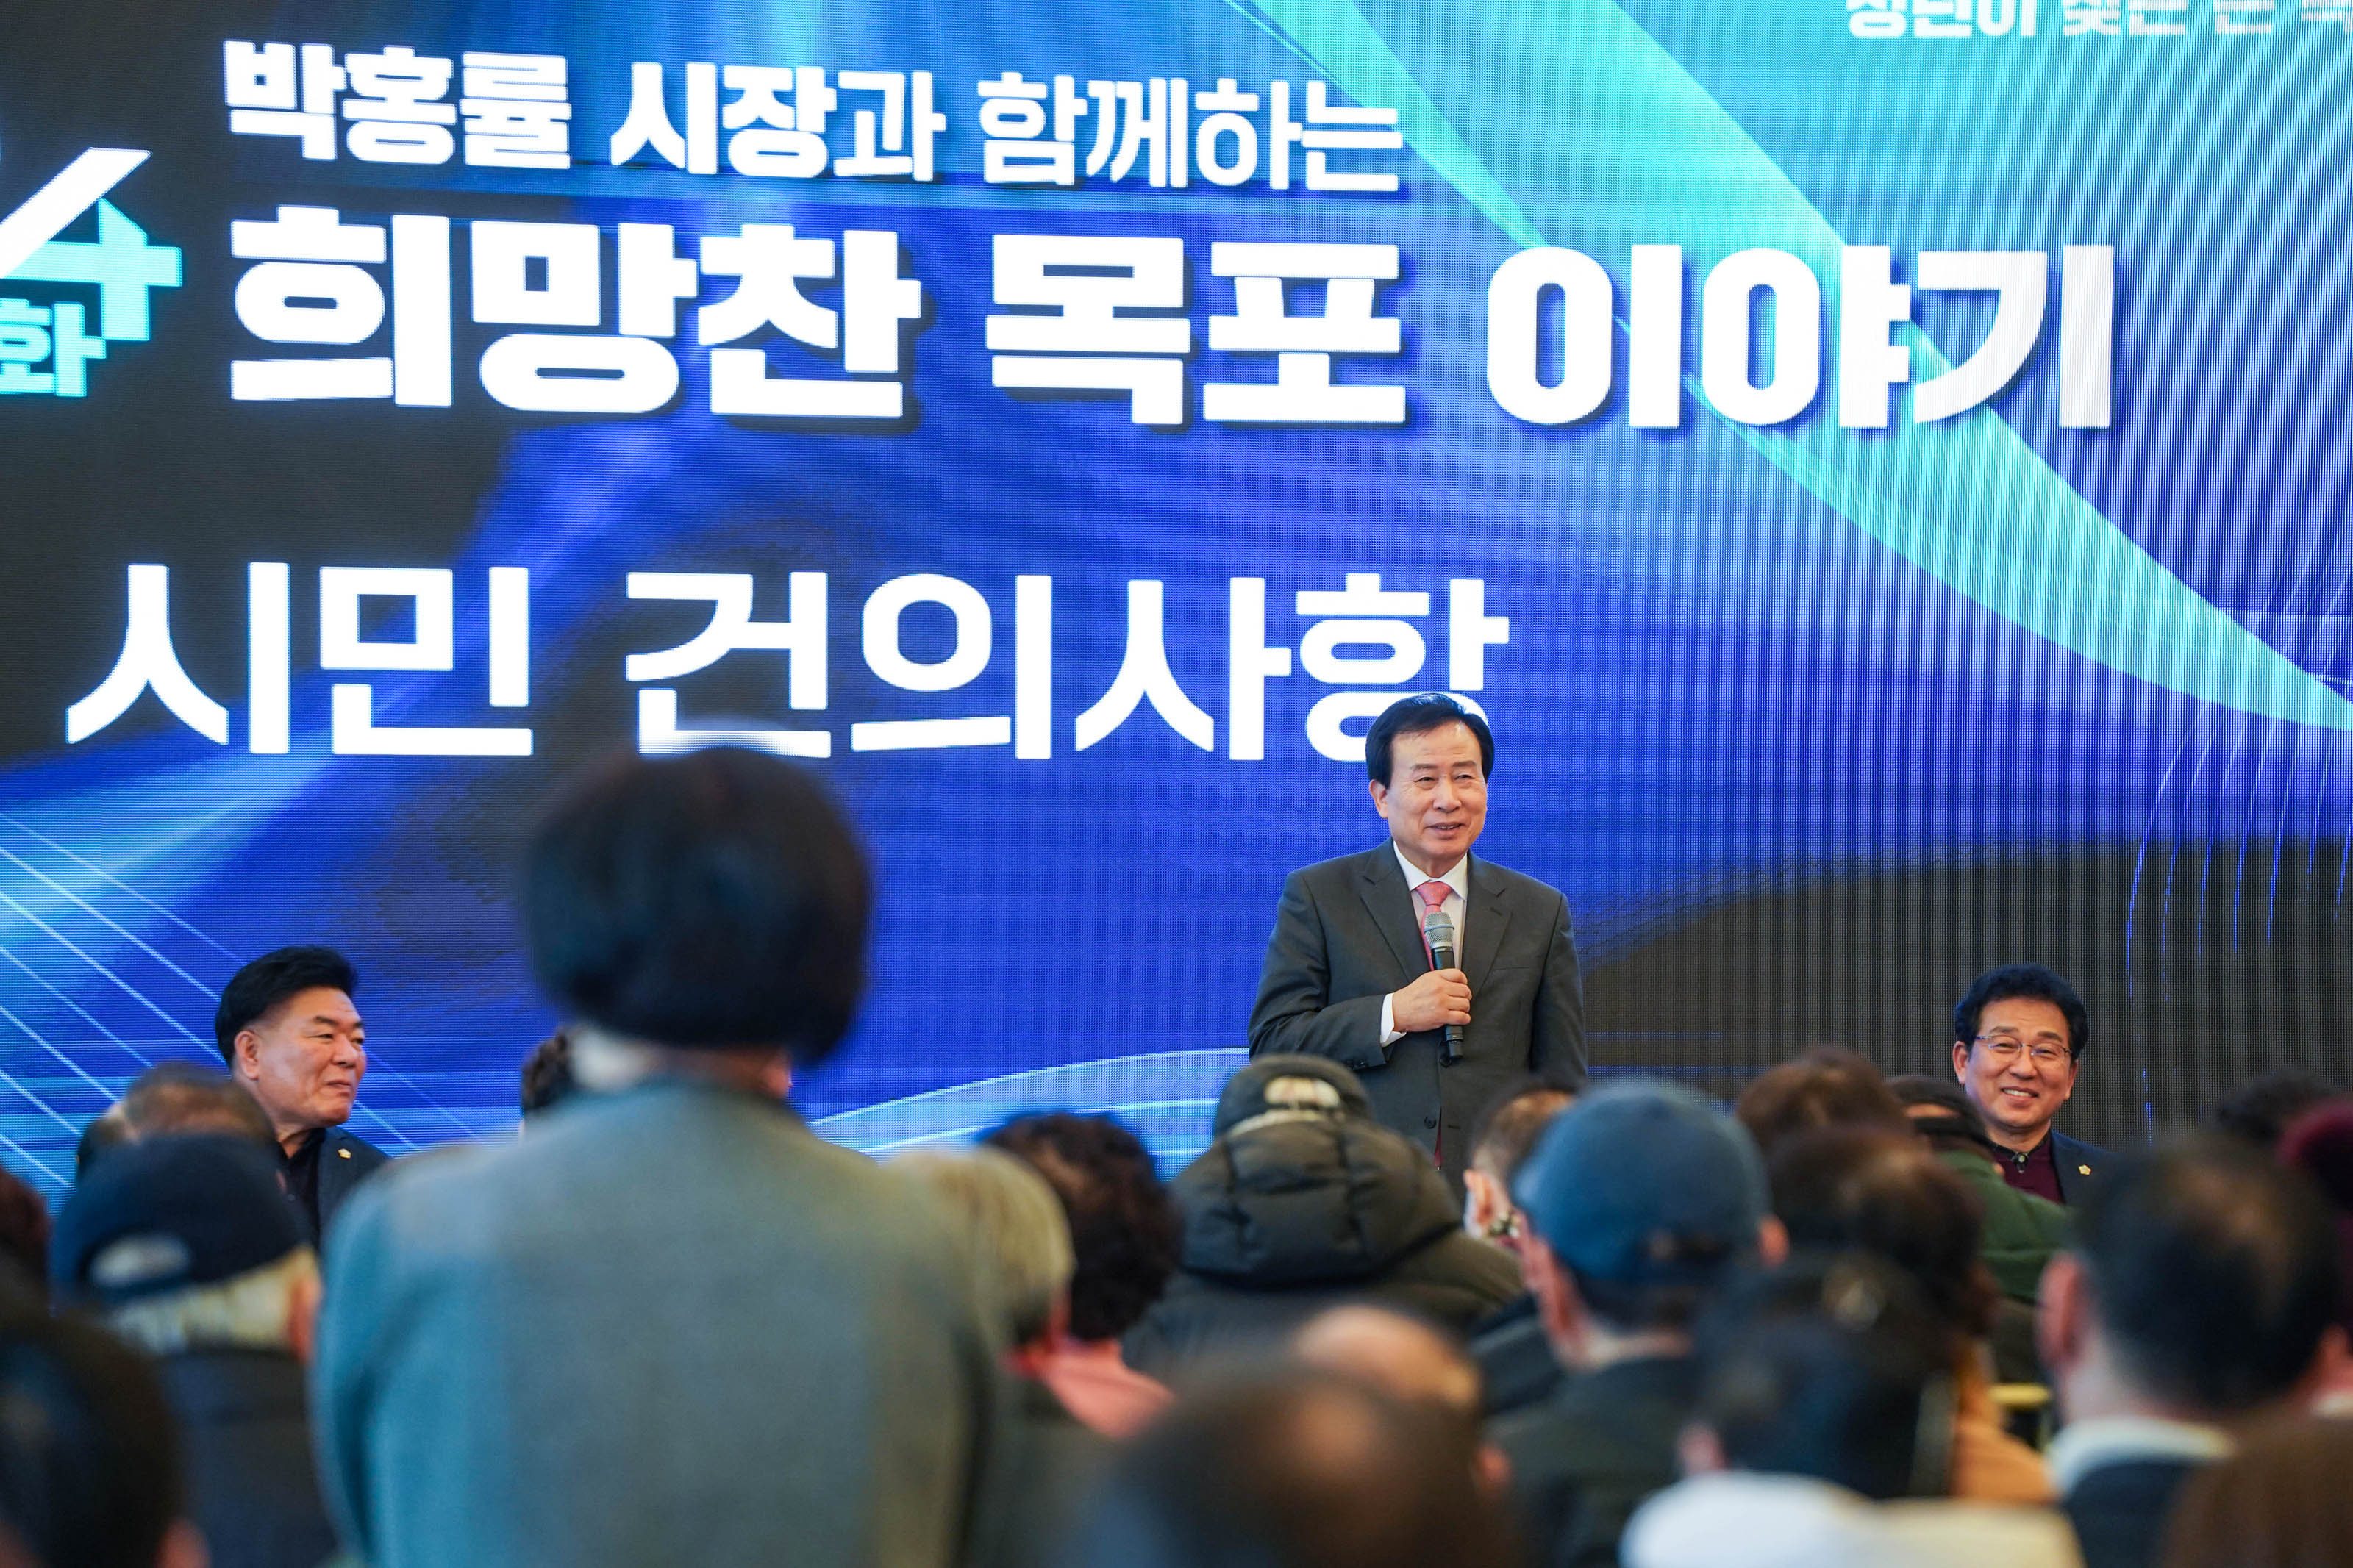 박홍률 시장과 함께하는 희망찬 목포이야기 시민 건의사항 글을 배경으로 시민의 의견을 듣고있는 박홍률 시장과 경청하는 청중